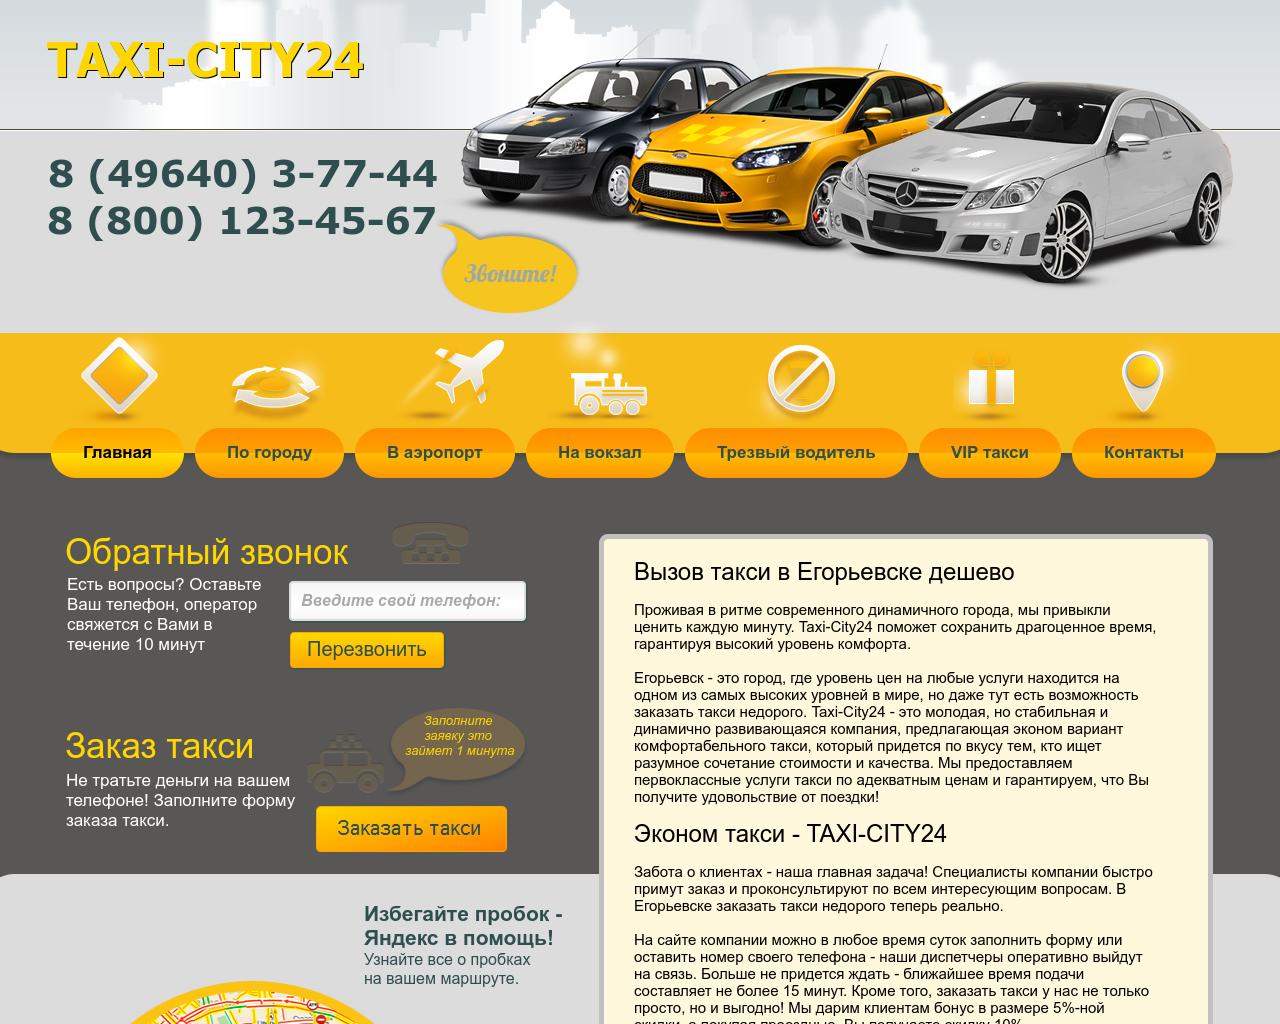 Изображение сайта taxi-city24.ru в разрешении 1280x1024